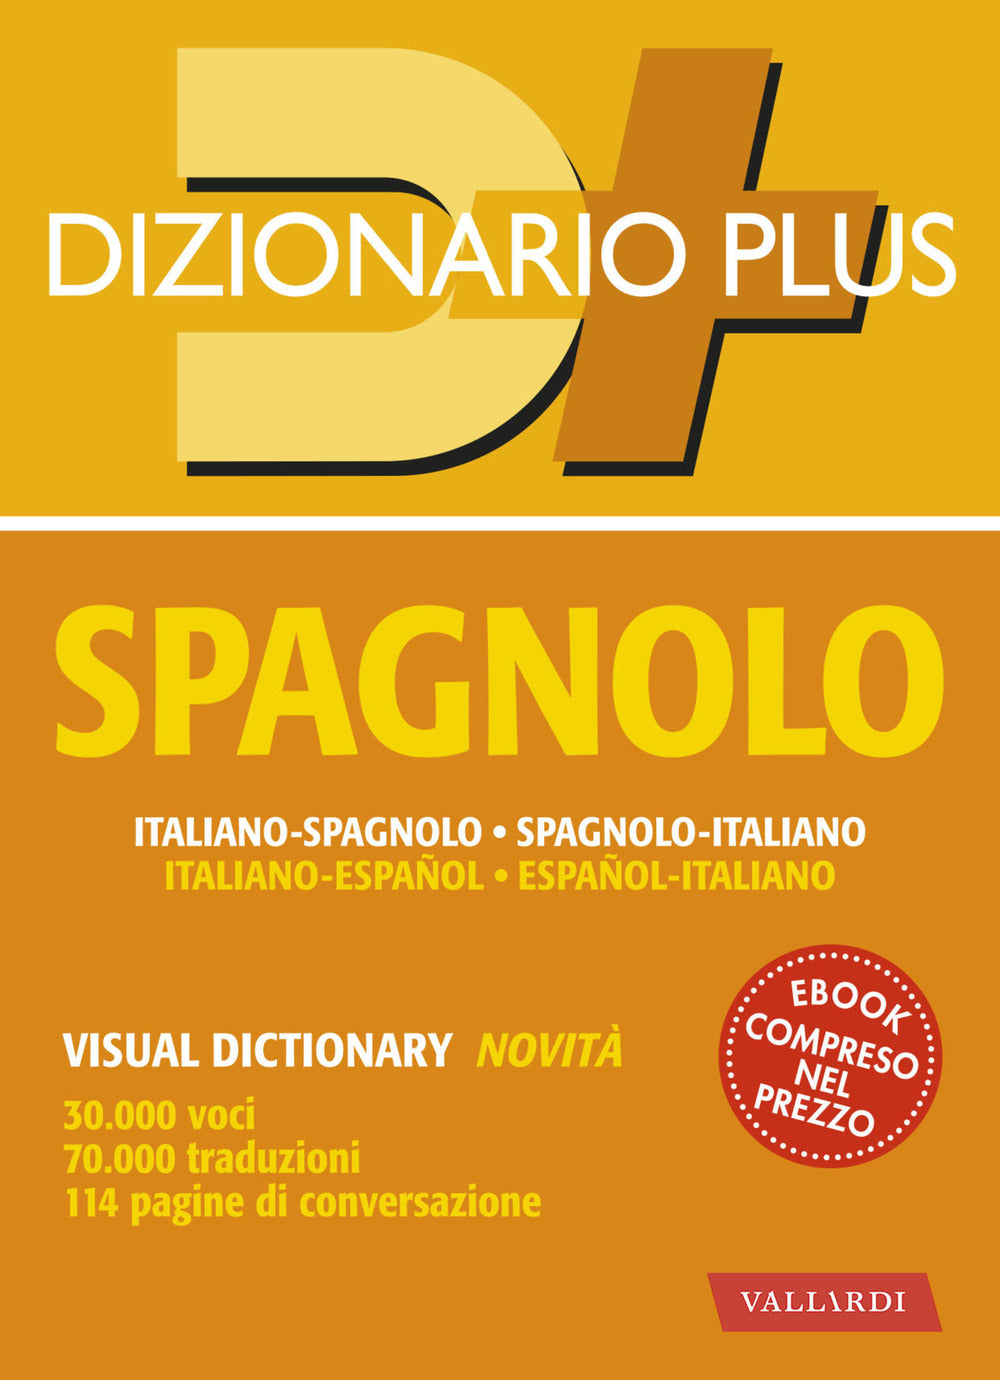 Dizionario spagnolo plus. Italiano-spagnolo, spagnolo-italiano.